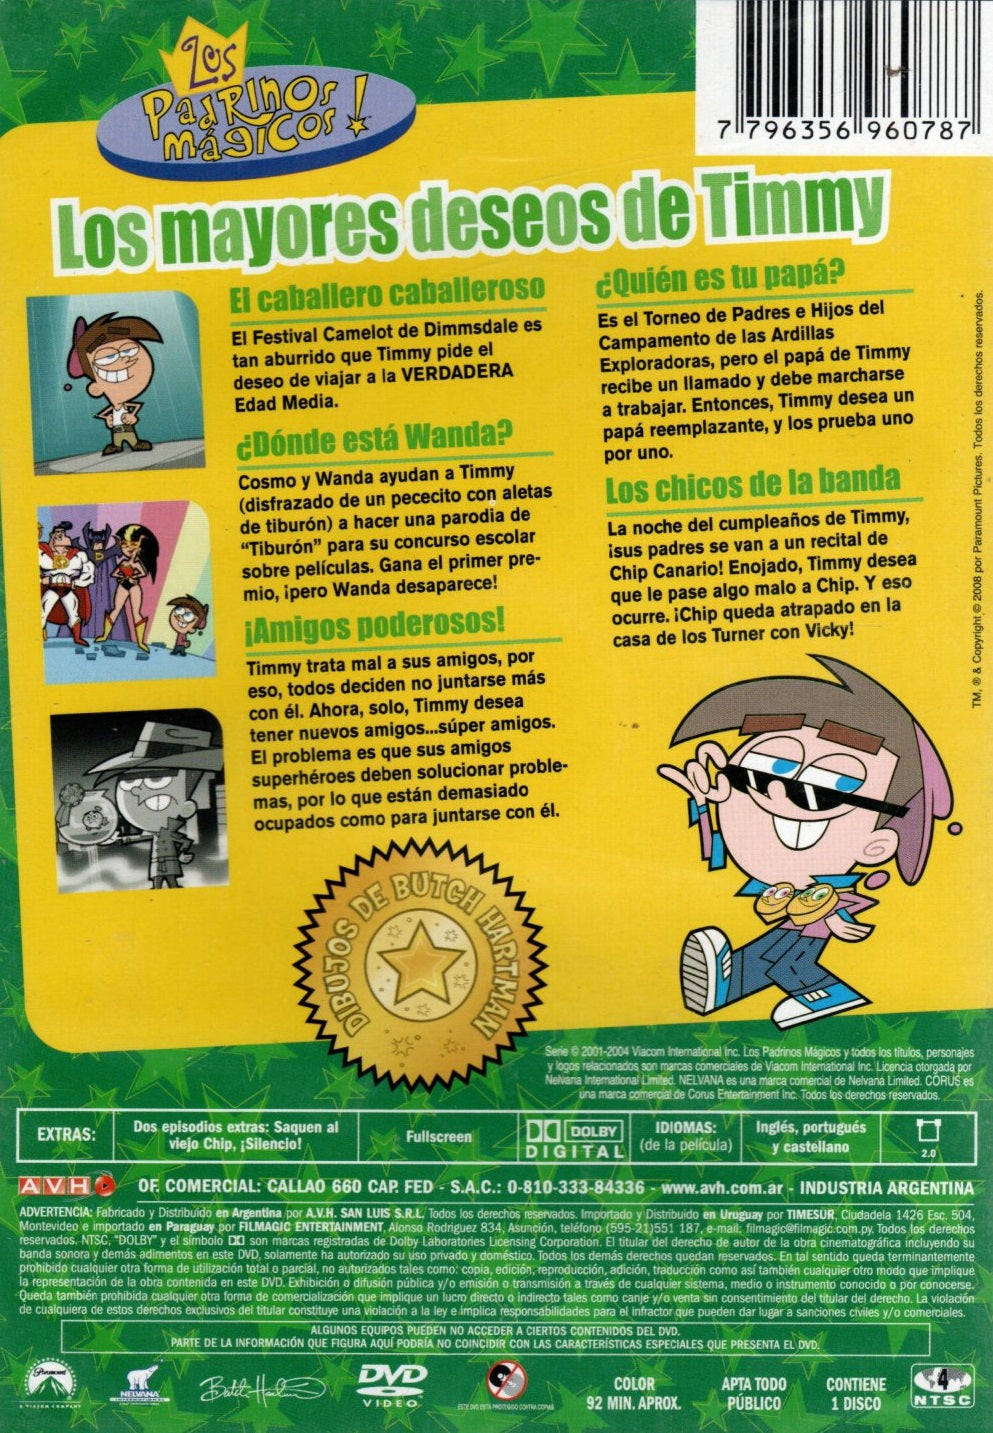 DVD LOS PADRINOS MAGICOS - LOS MAYORES DESEOS DE TIMMY